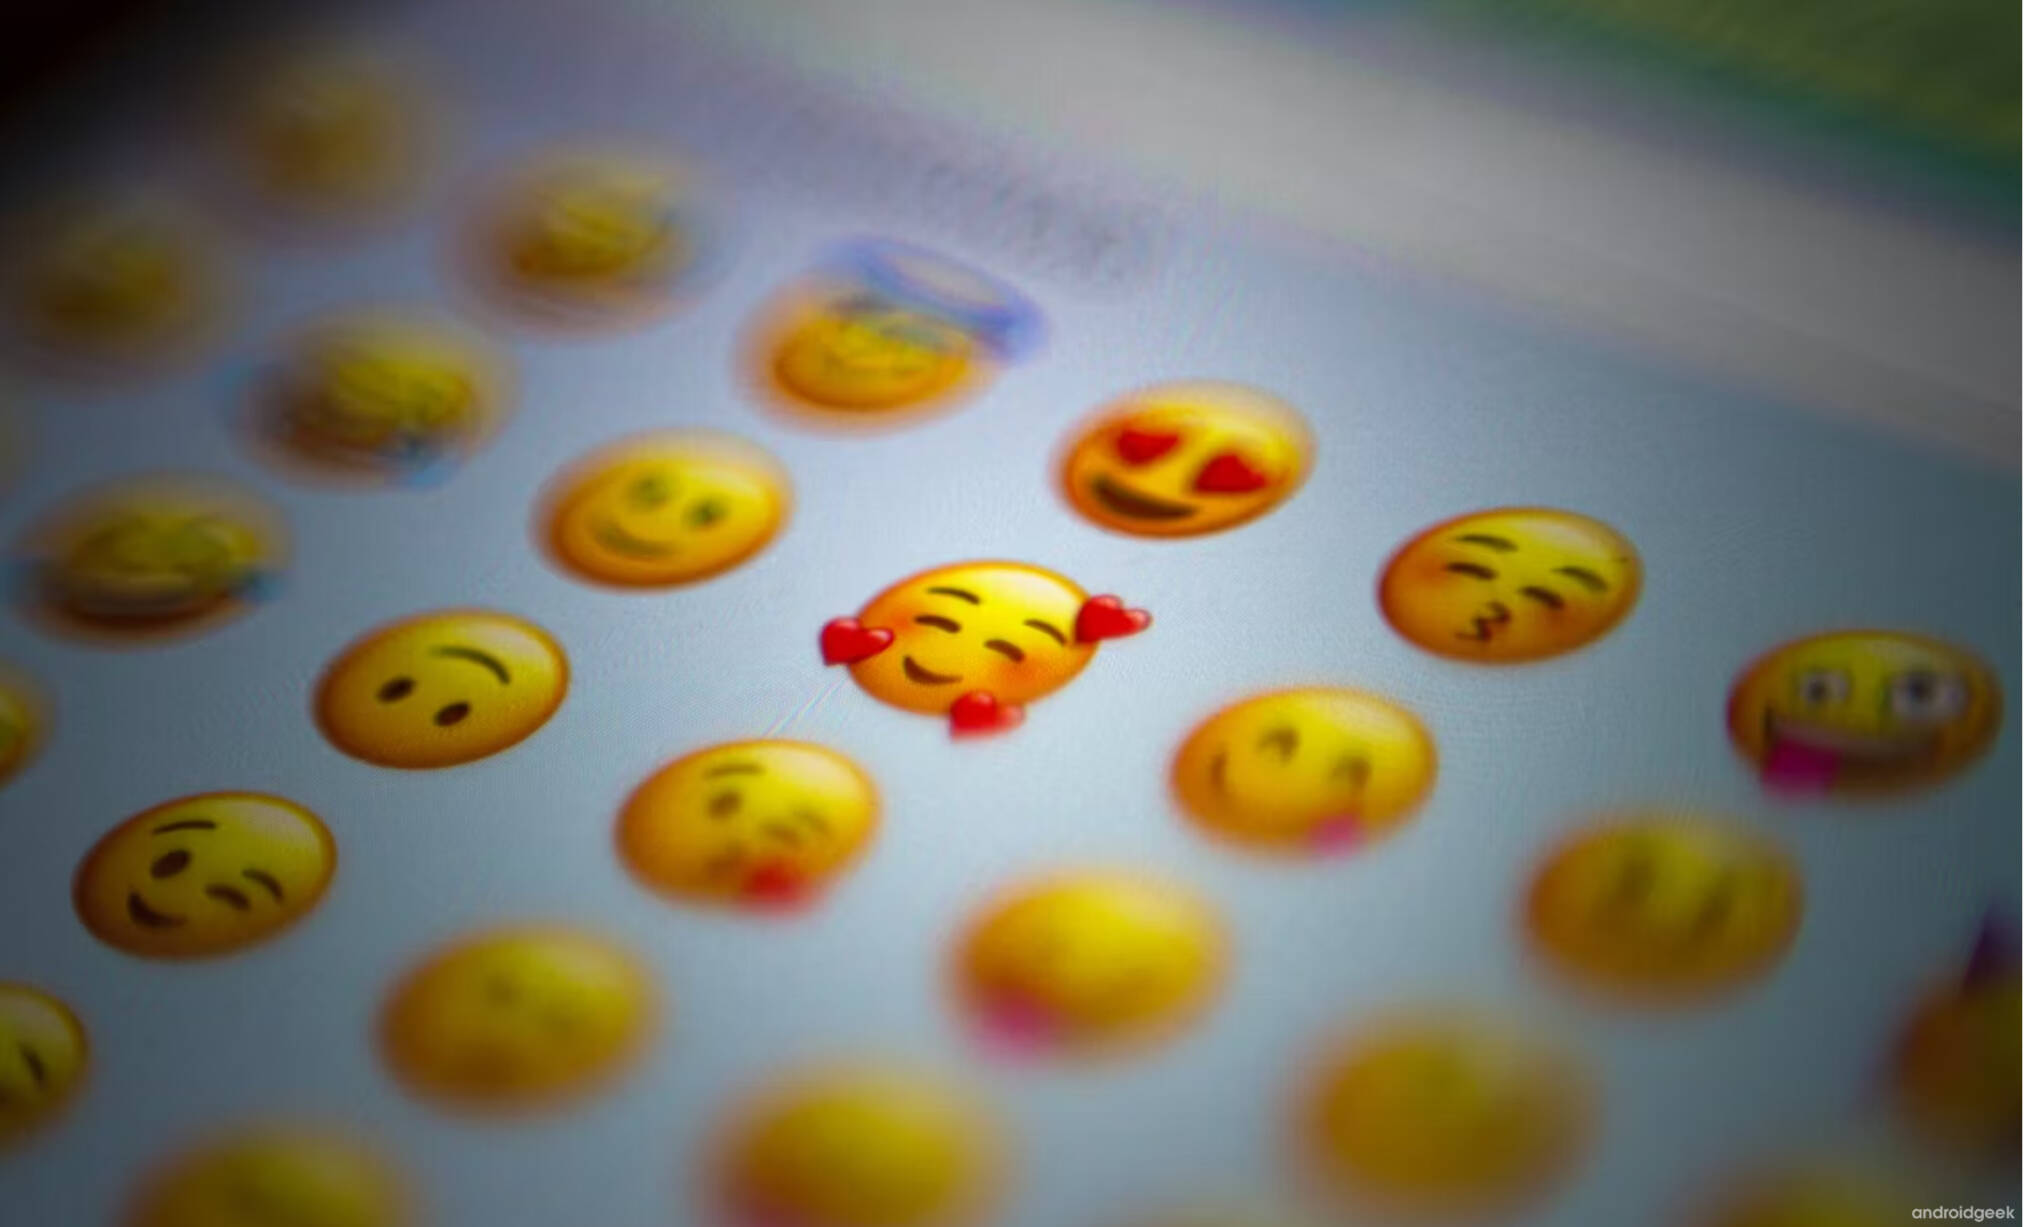 WhatsApp está a trabalhar para suportar os novos emojis Unicode 15 1